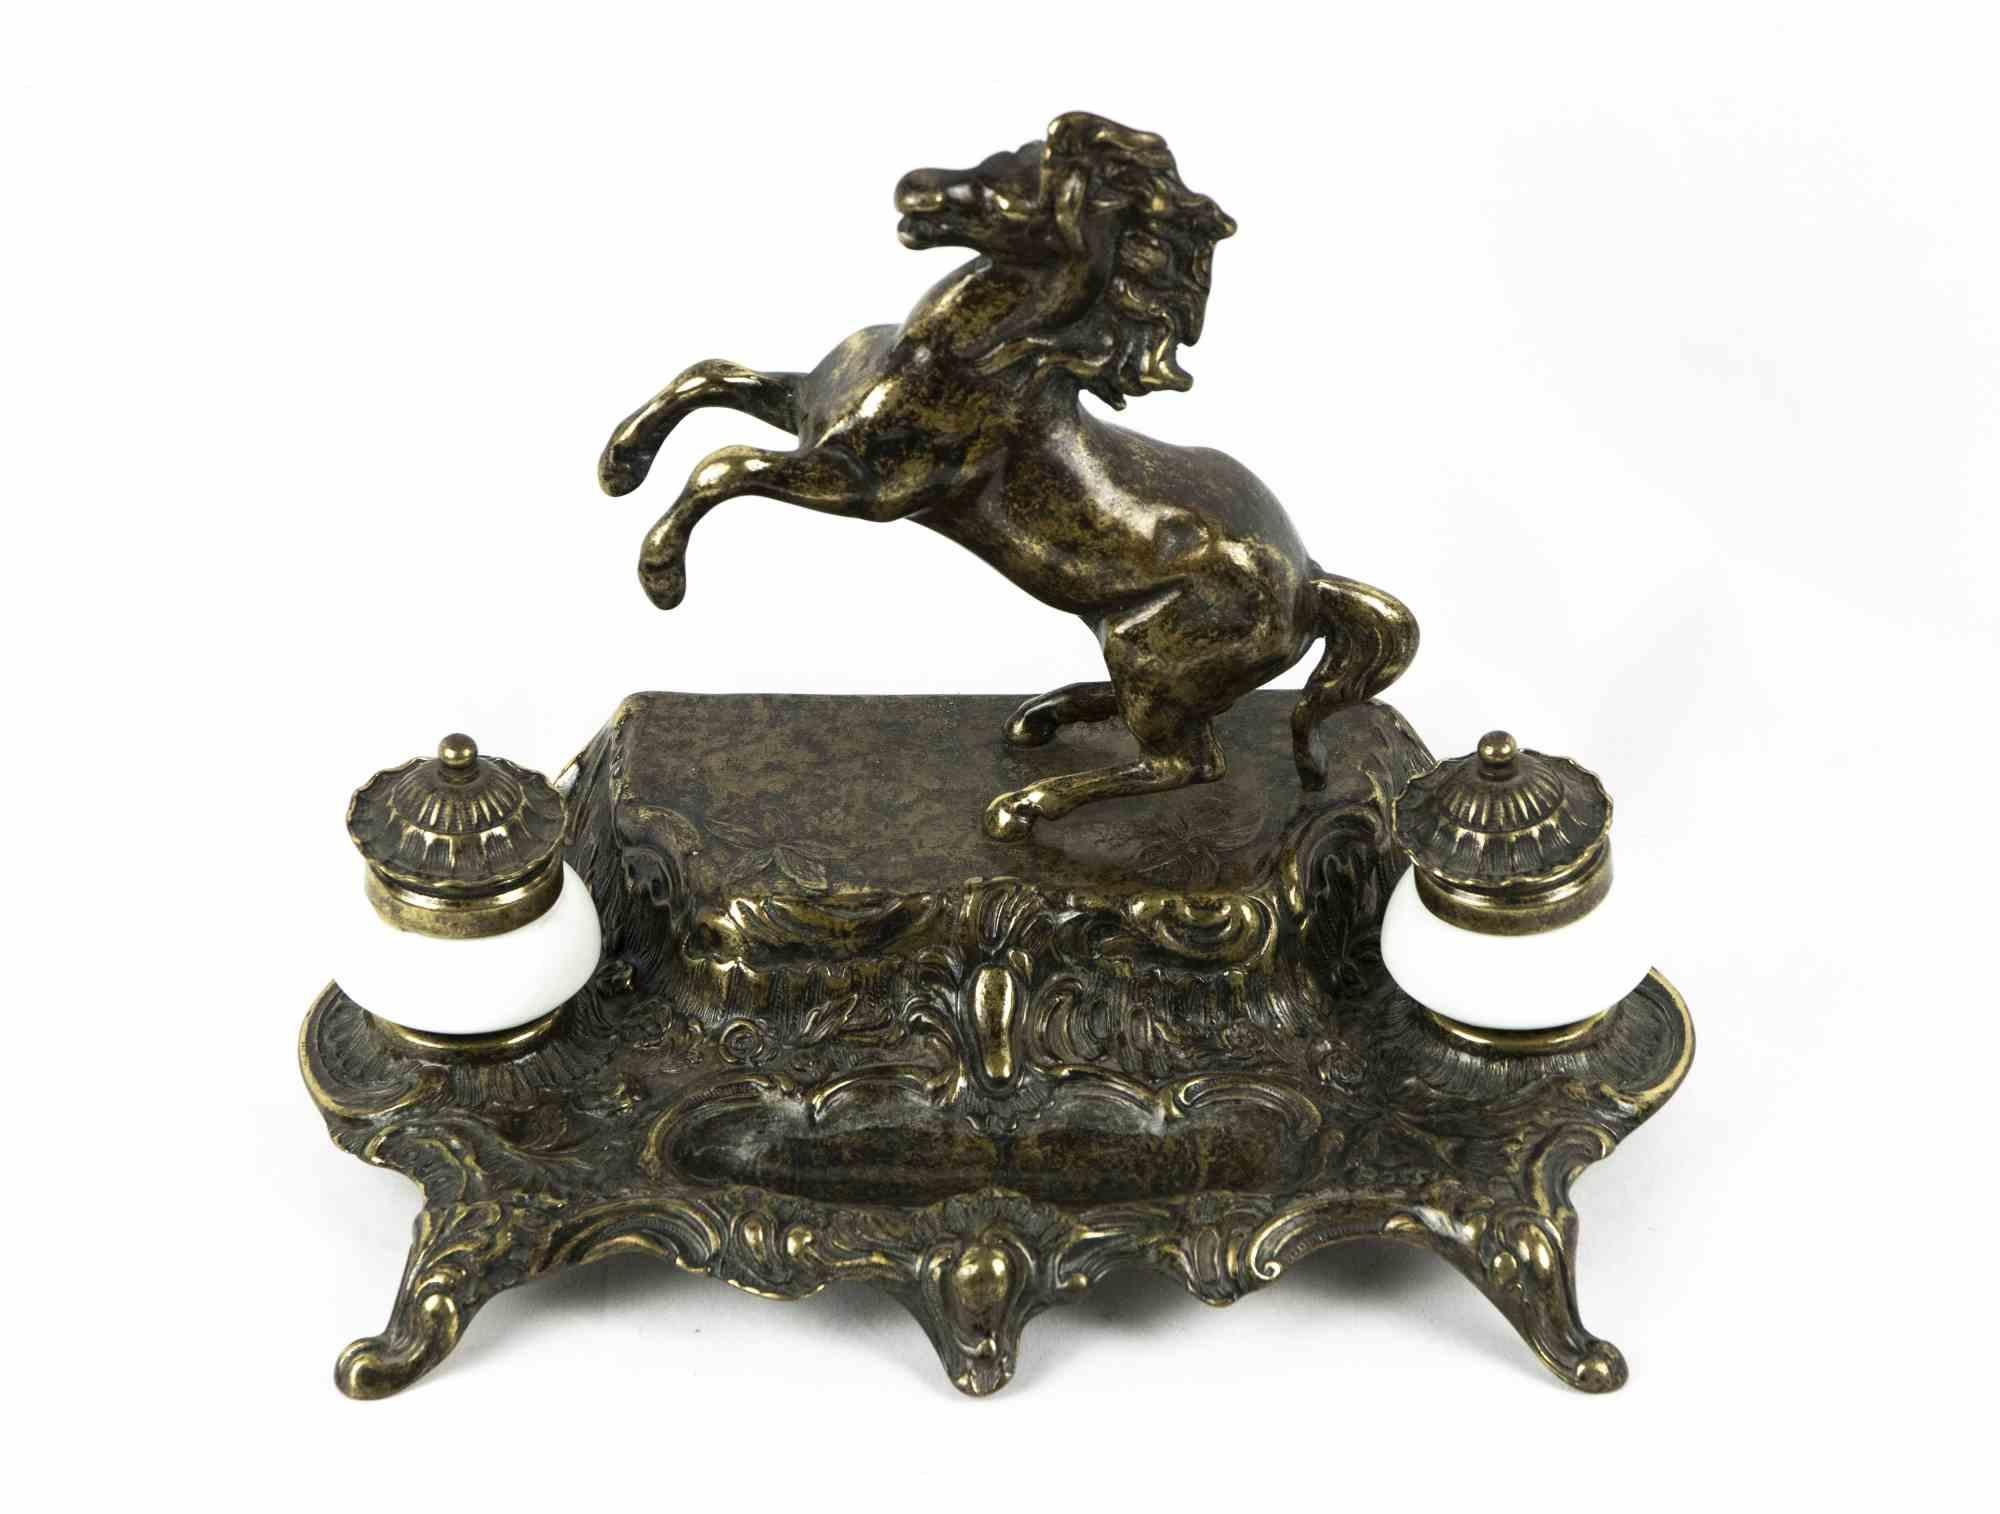 El tintero de bronce es un original objeto decorativo realizado a mediados del siglo XX.

Un tintero de bronce muy elegante decorado con un caballo rampante. Incluye un par de tinteros.